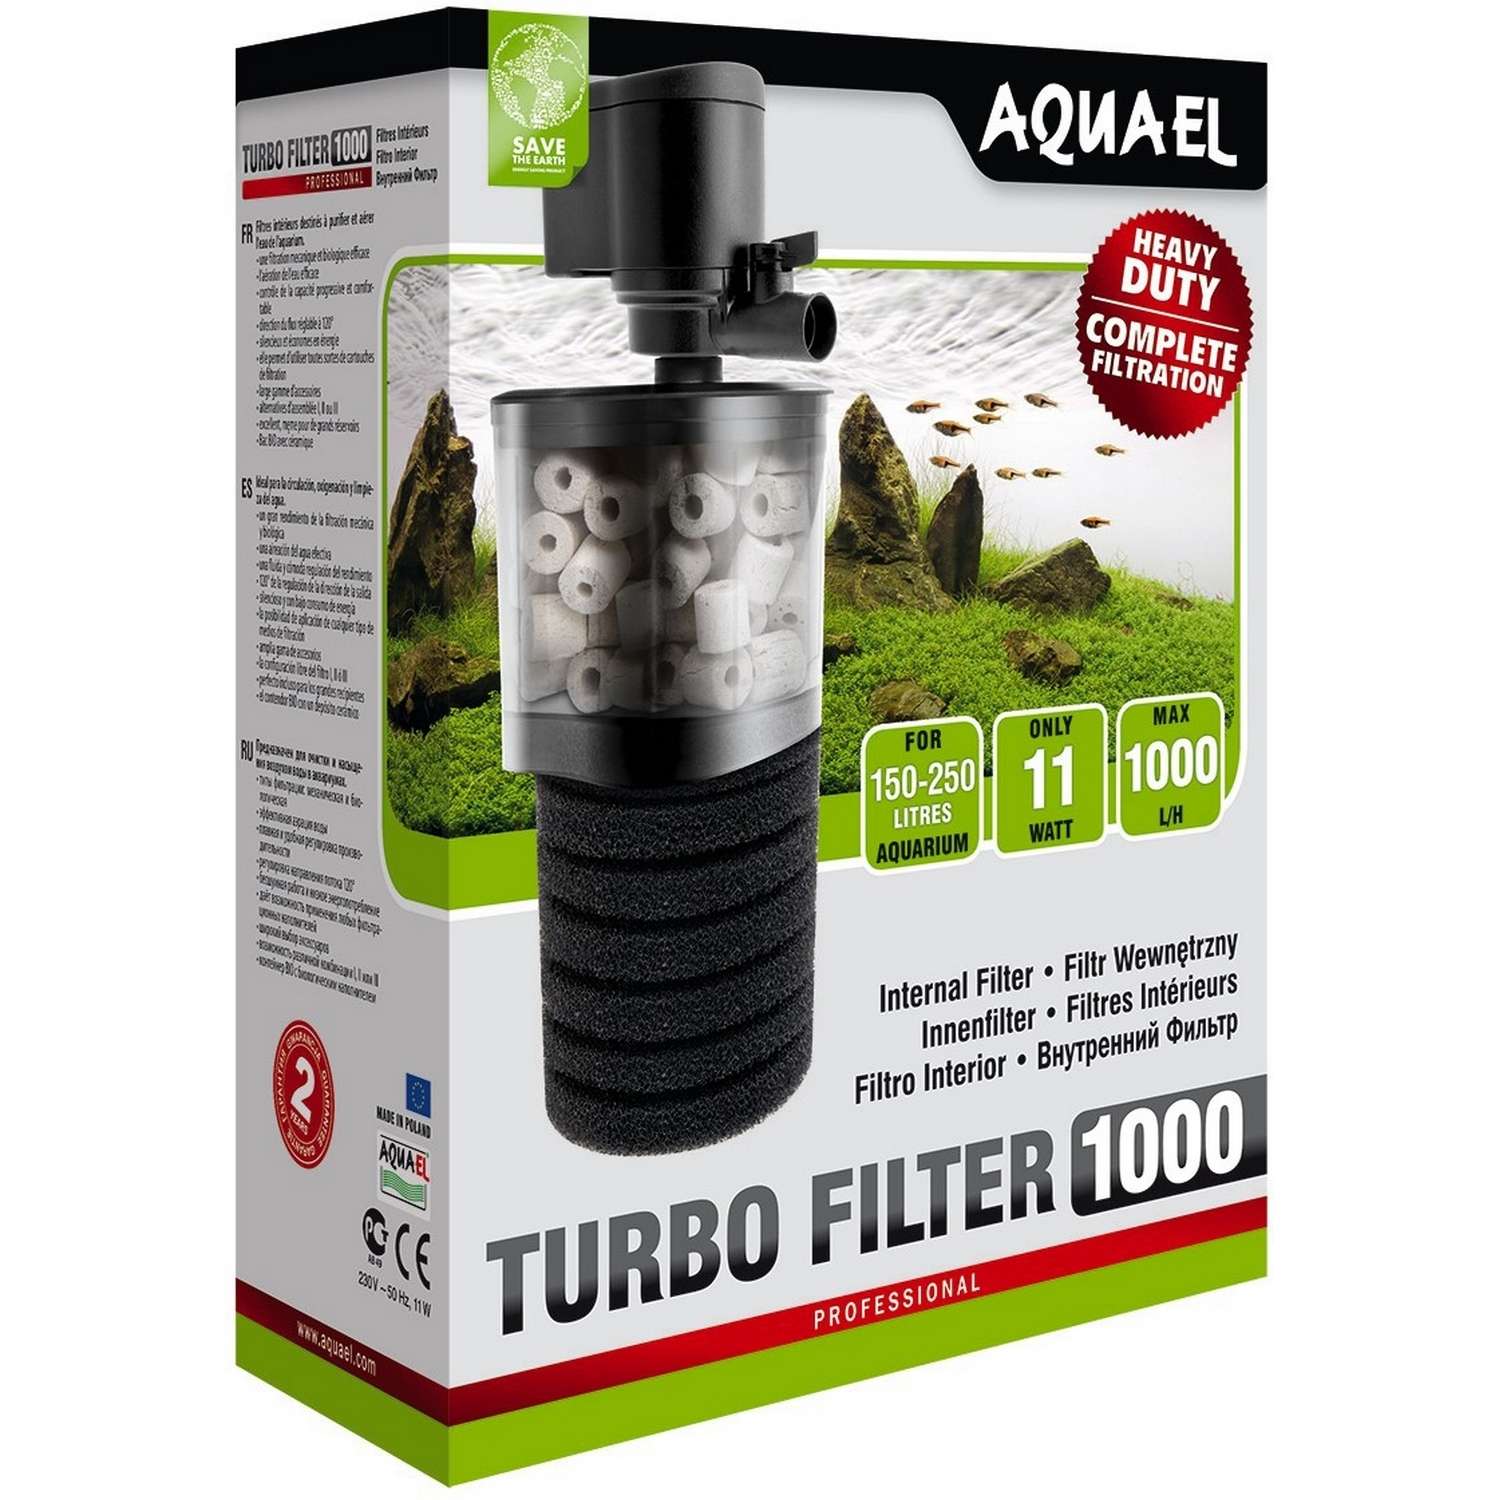 Фильтр для аквариумов AQUAEL Turbo Filter 1000 внутренний 109403 - фото 2